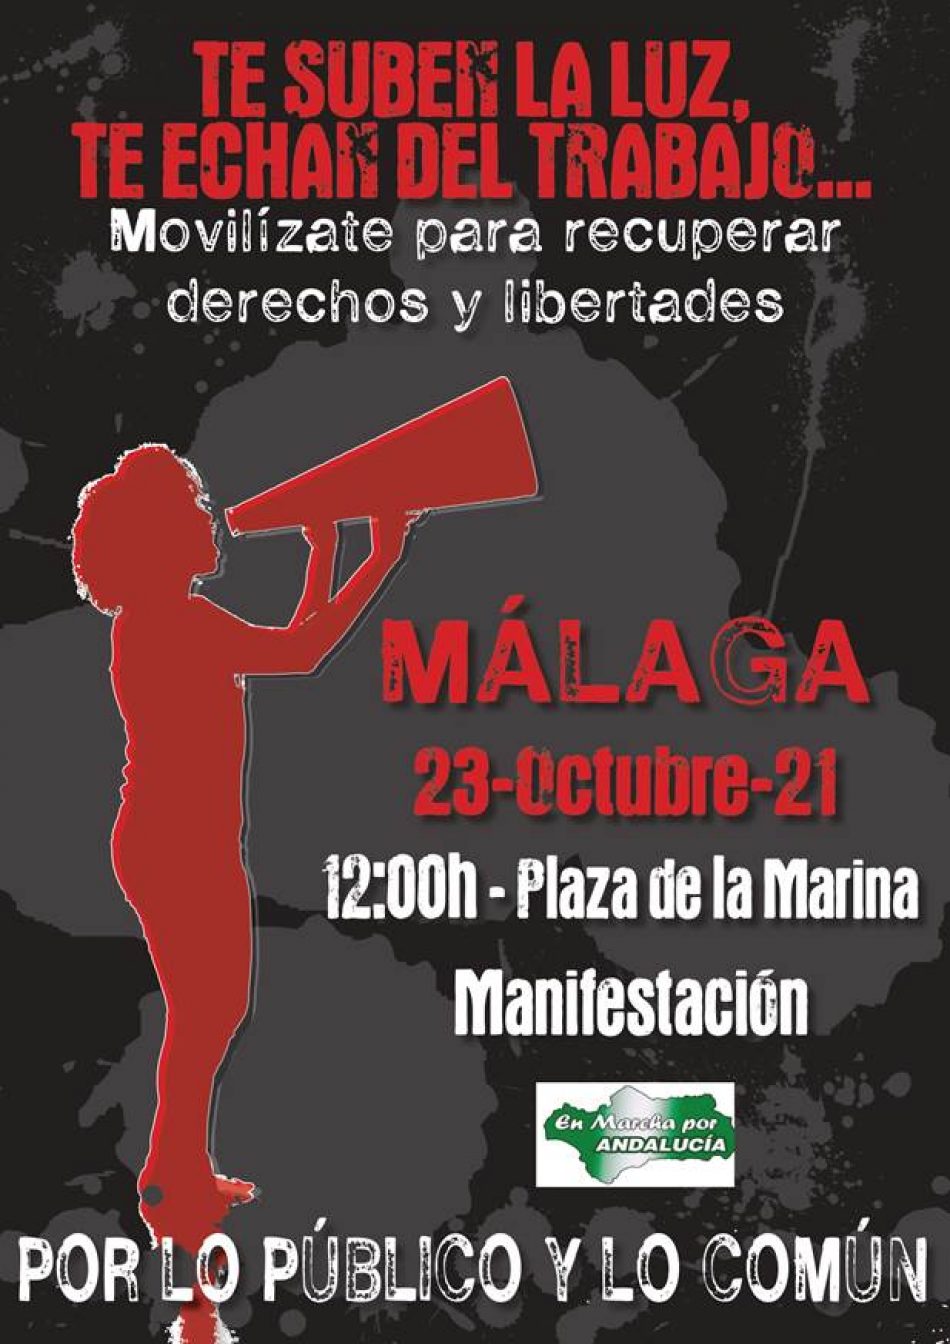 «Por lo Público y por lo común»: manifestación en Málaga el 23 de Octubre